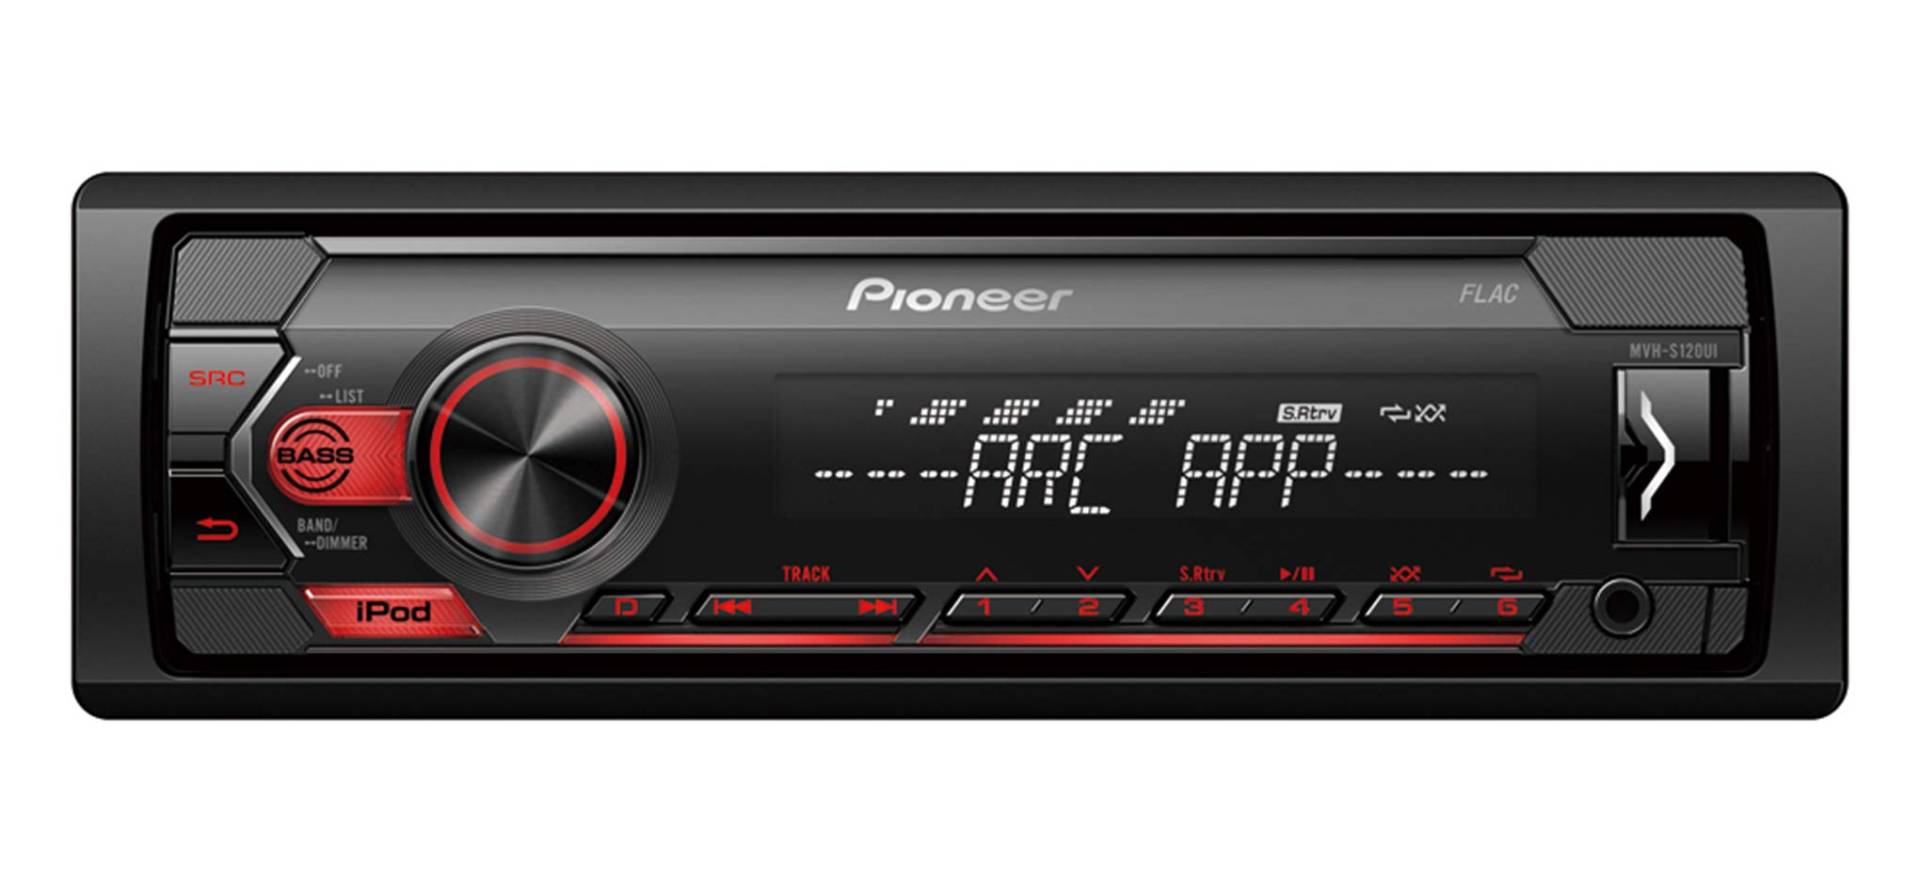 Pioneer MVH-S120UI 1-DIN Autoradio mit RDS, rot, halbe Einbautiefe, USB für MP3, WMA, WAV, FLAC, AUX-Eingang, Android-Unterstützung, iPhone-Steuerung, ARC App kompatibel von Pioneer